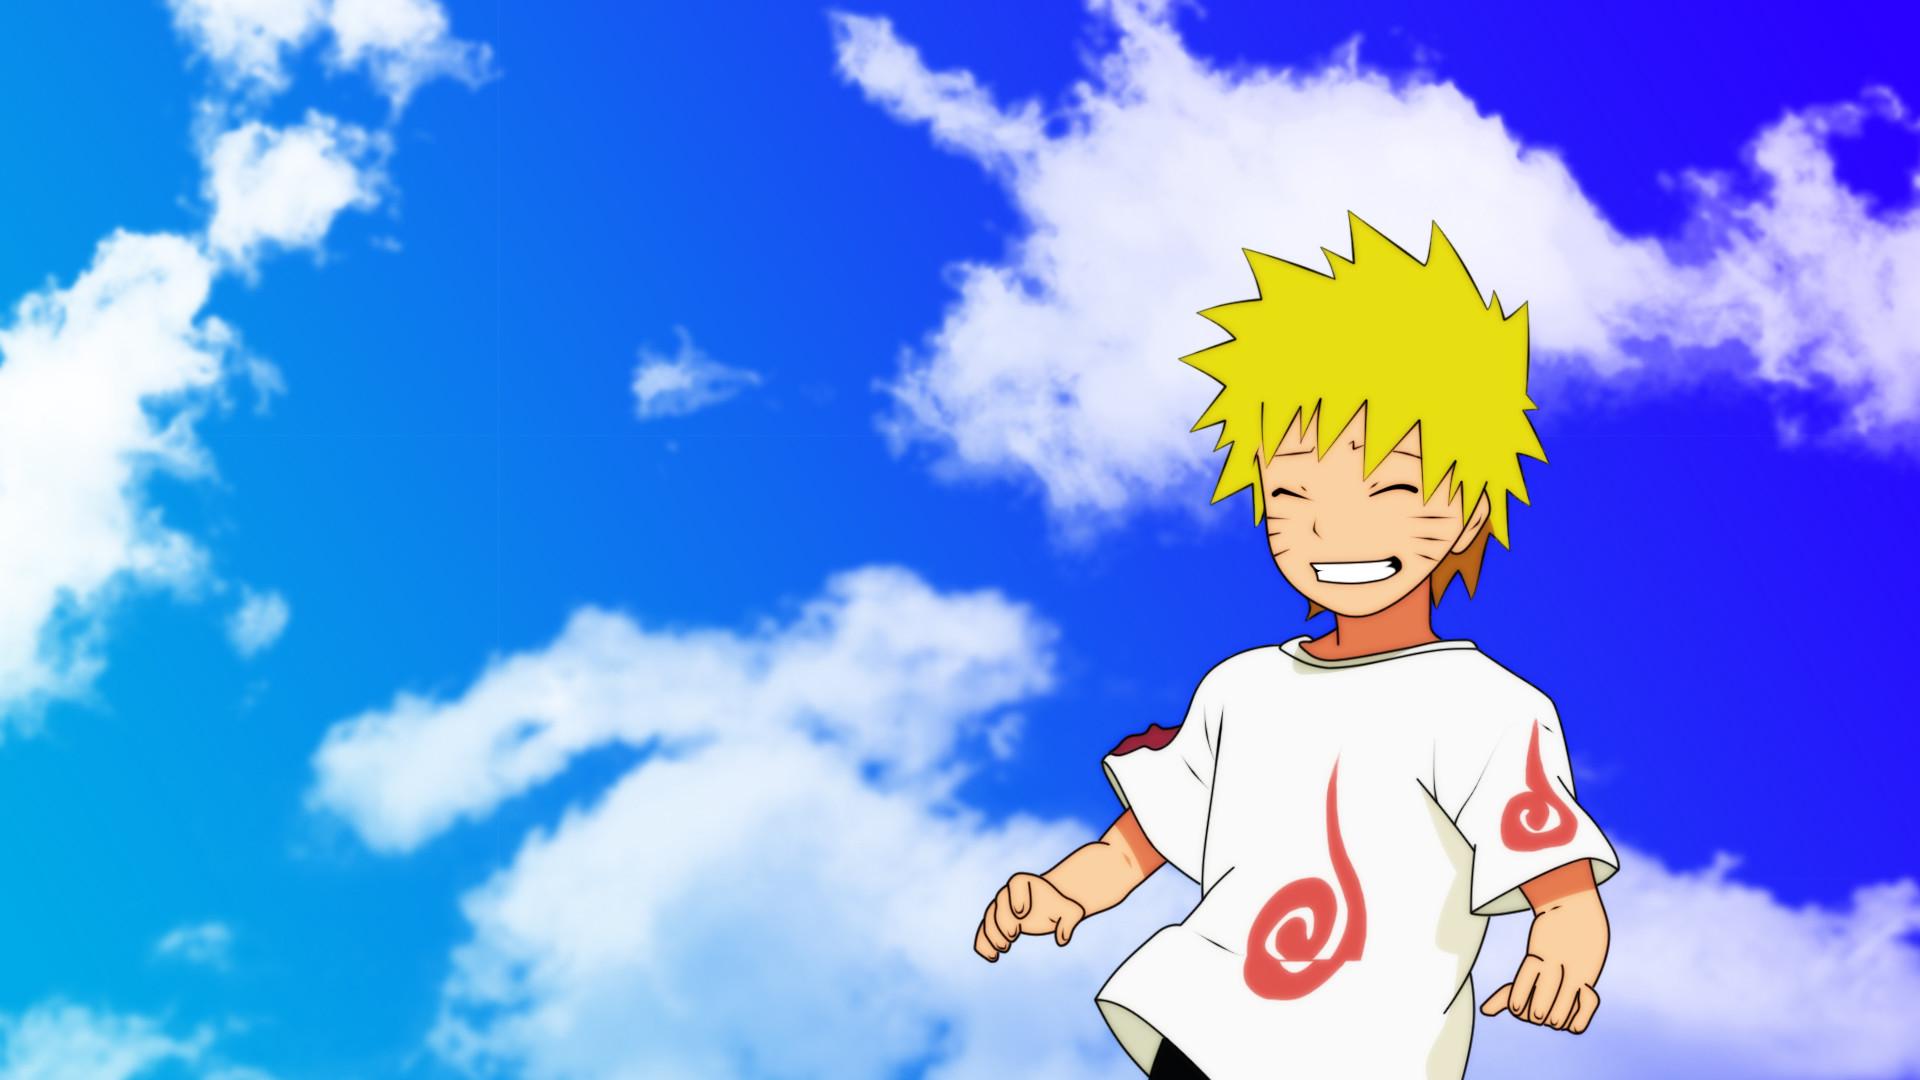 Hình nền Naruto là sự lựa chọn hoàn hảo cho những fan yêu thích chàng ninja cũng như thế giới ninja đầy màu sắc và hấp dẫn. Từ hình ảnh bắt mắt cho đến tấm nền đẹp, hình nền Naruto sẽ giúp máy tính của bạn trở nên phong phú và độc đáo.